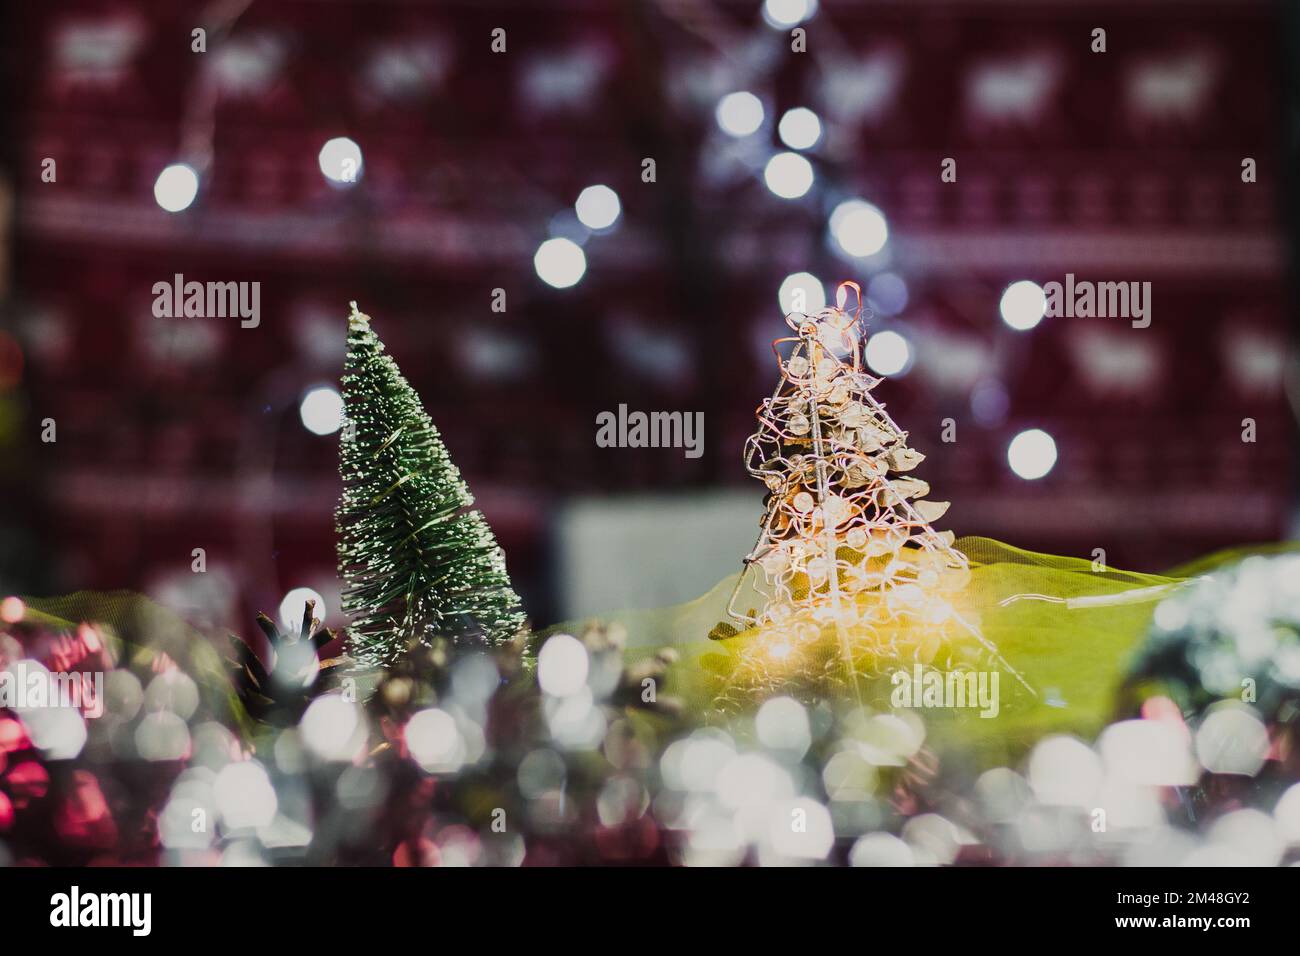 Weihnachts- und Neujahrskarte mit einem kleinen künstlichen grünen Baum und Zapfen auf einem Tisch mit farbenfrohem Hintergrund, in dem die Lichter leuchten und einen Bok erzeugen Stockfoto